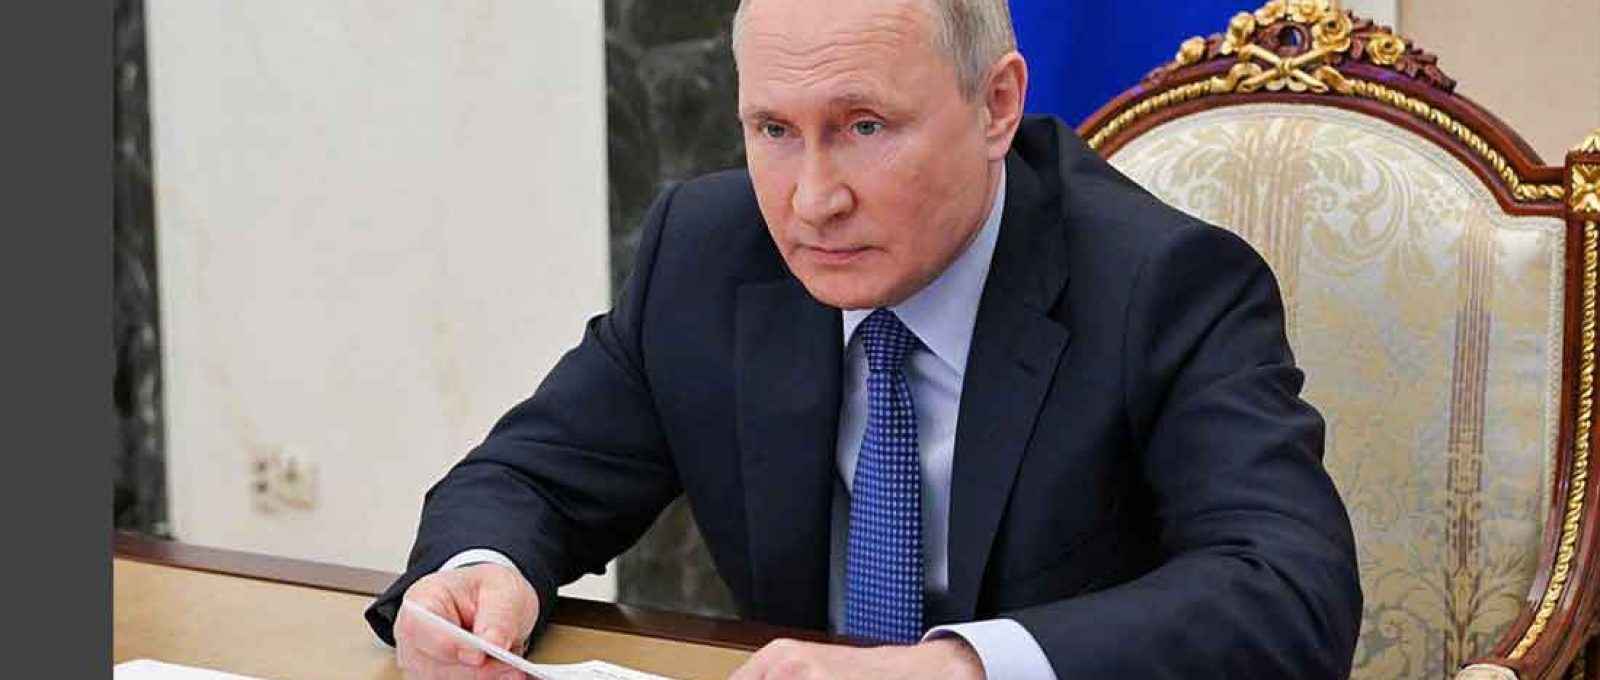 O presidente da Rússia, Vladimir Putin (Foto: Alexei Nikolsky/Escritório de Imprensa Presidencial da Rússia).